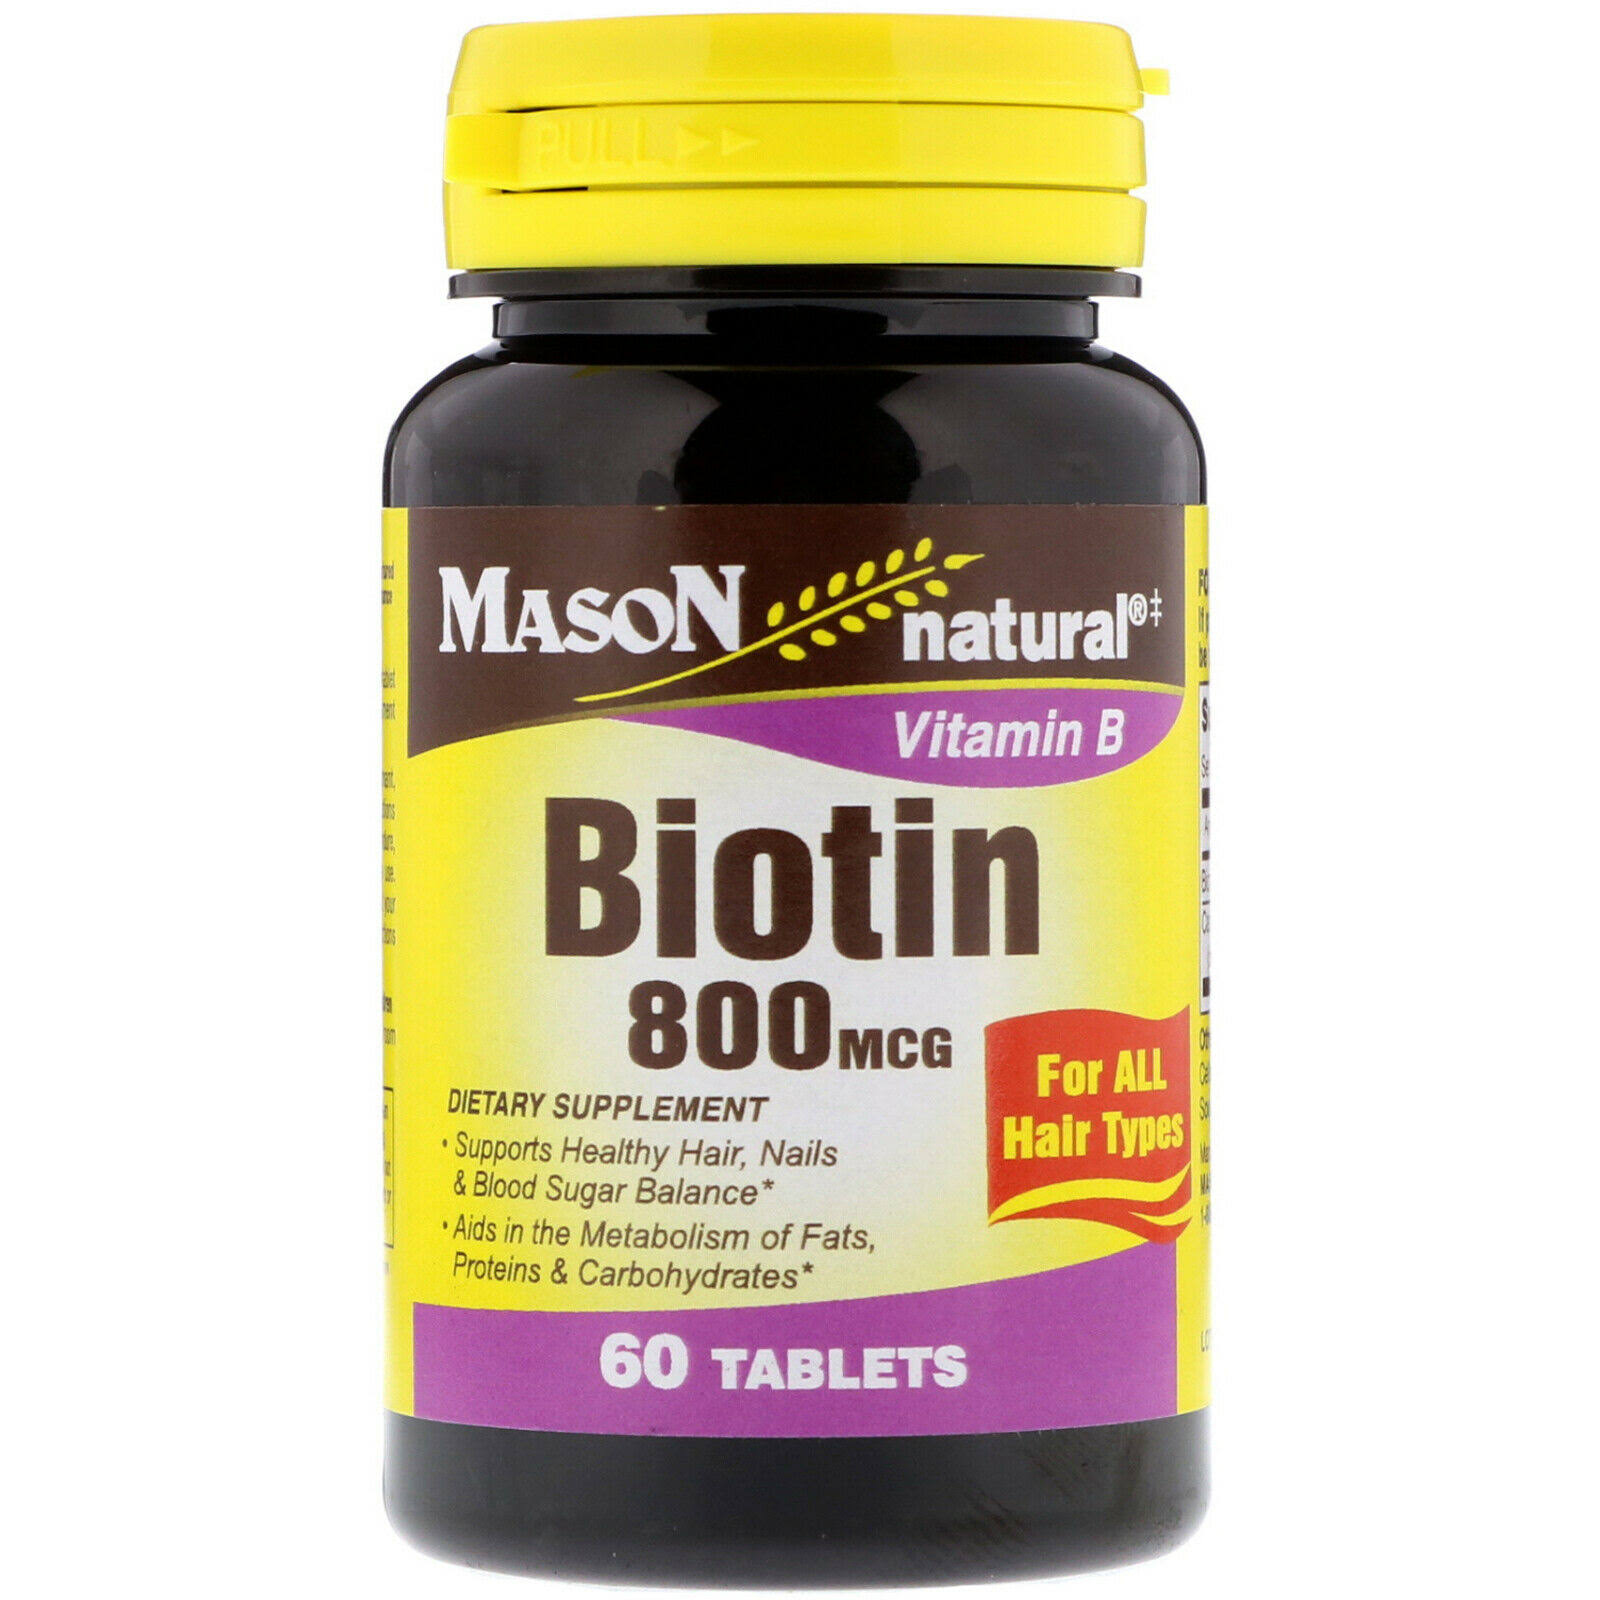 Mason Natural Vitamin B Biotin - 60 Tablets, 800mcg